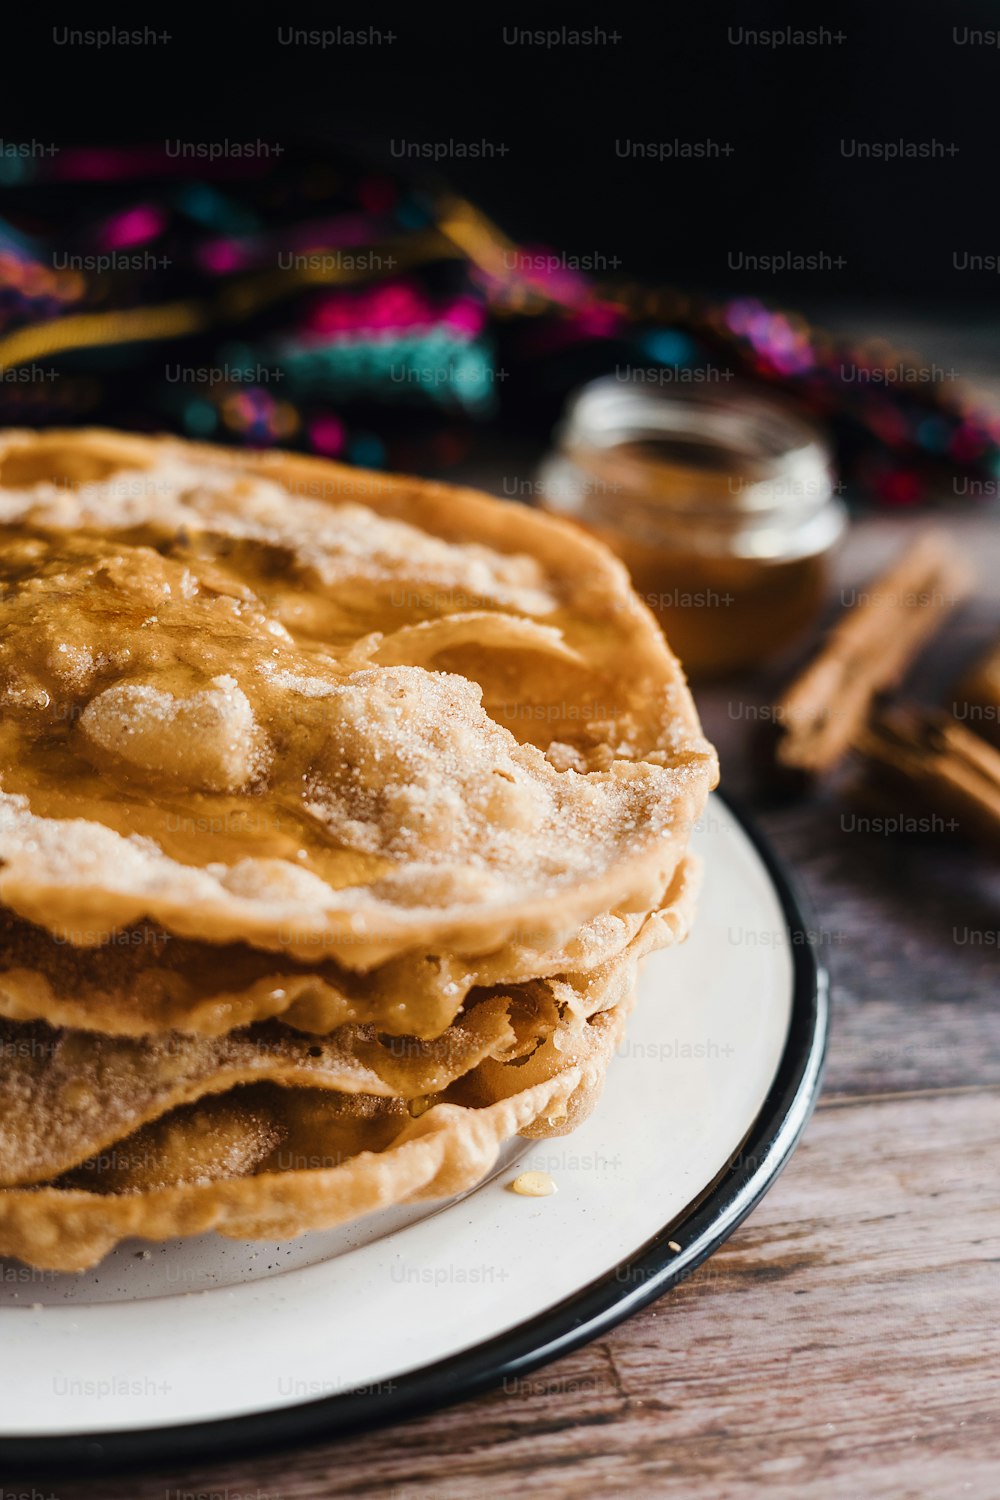 メキシコのブニュエロスのレシピとメキシコのクリスマスの伝統的なデザートの材料